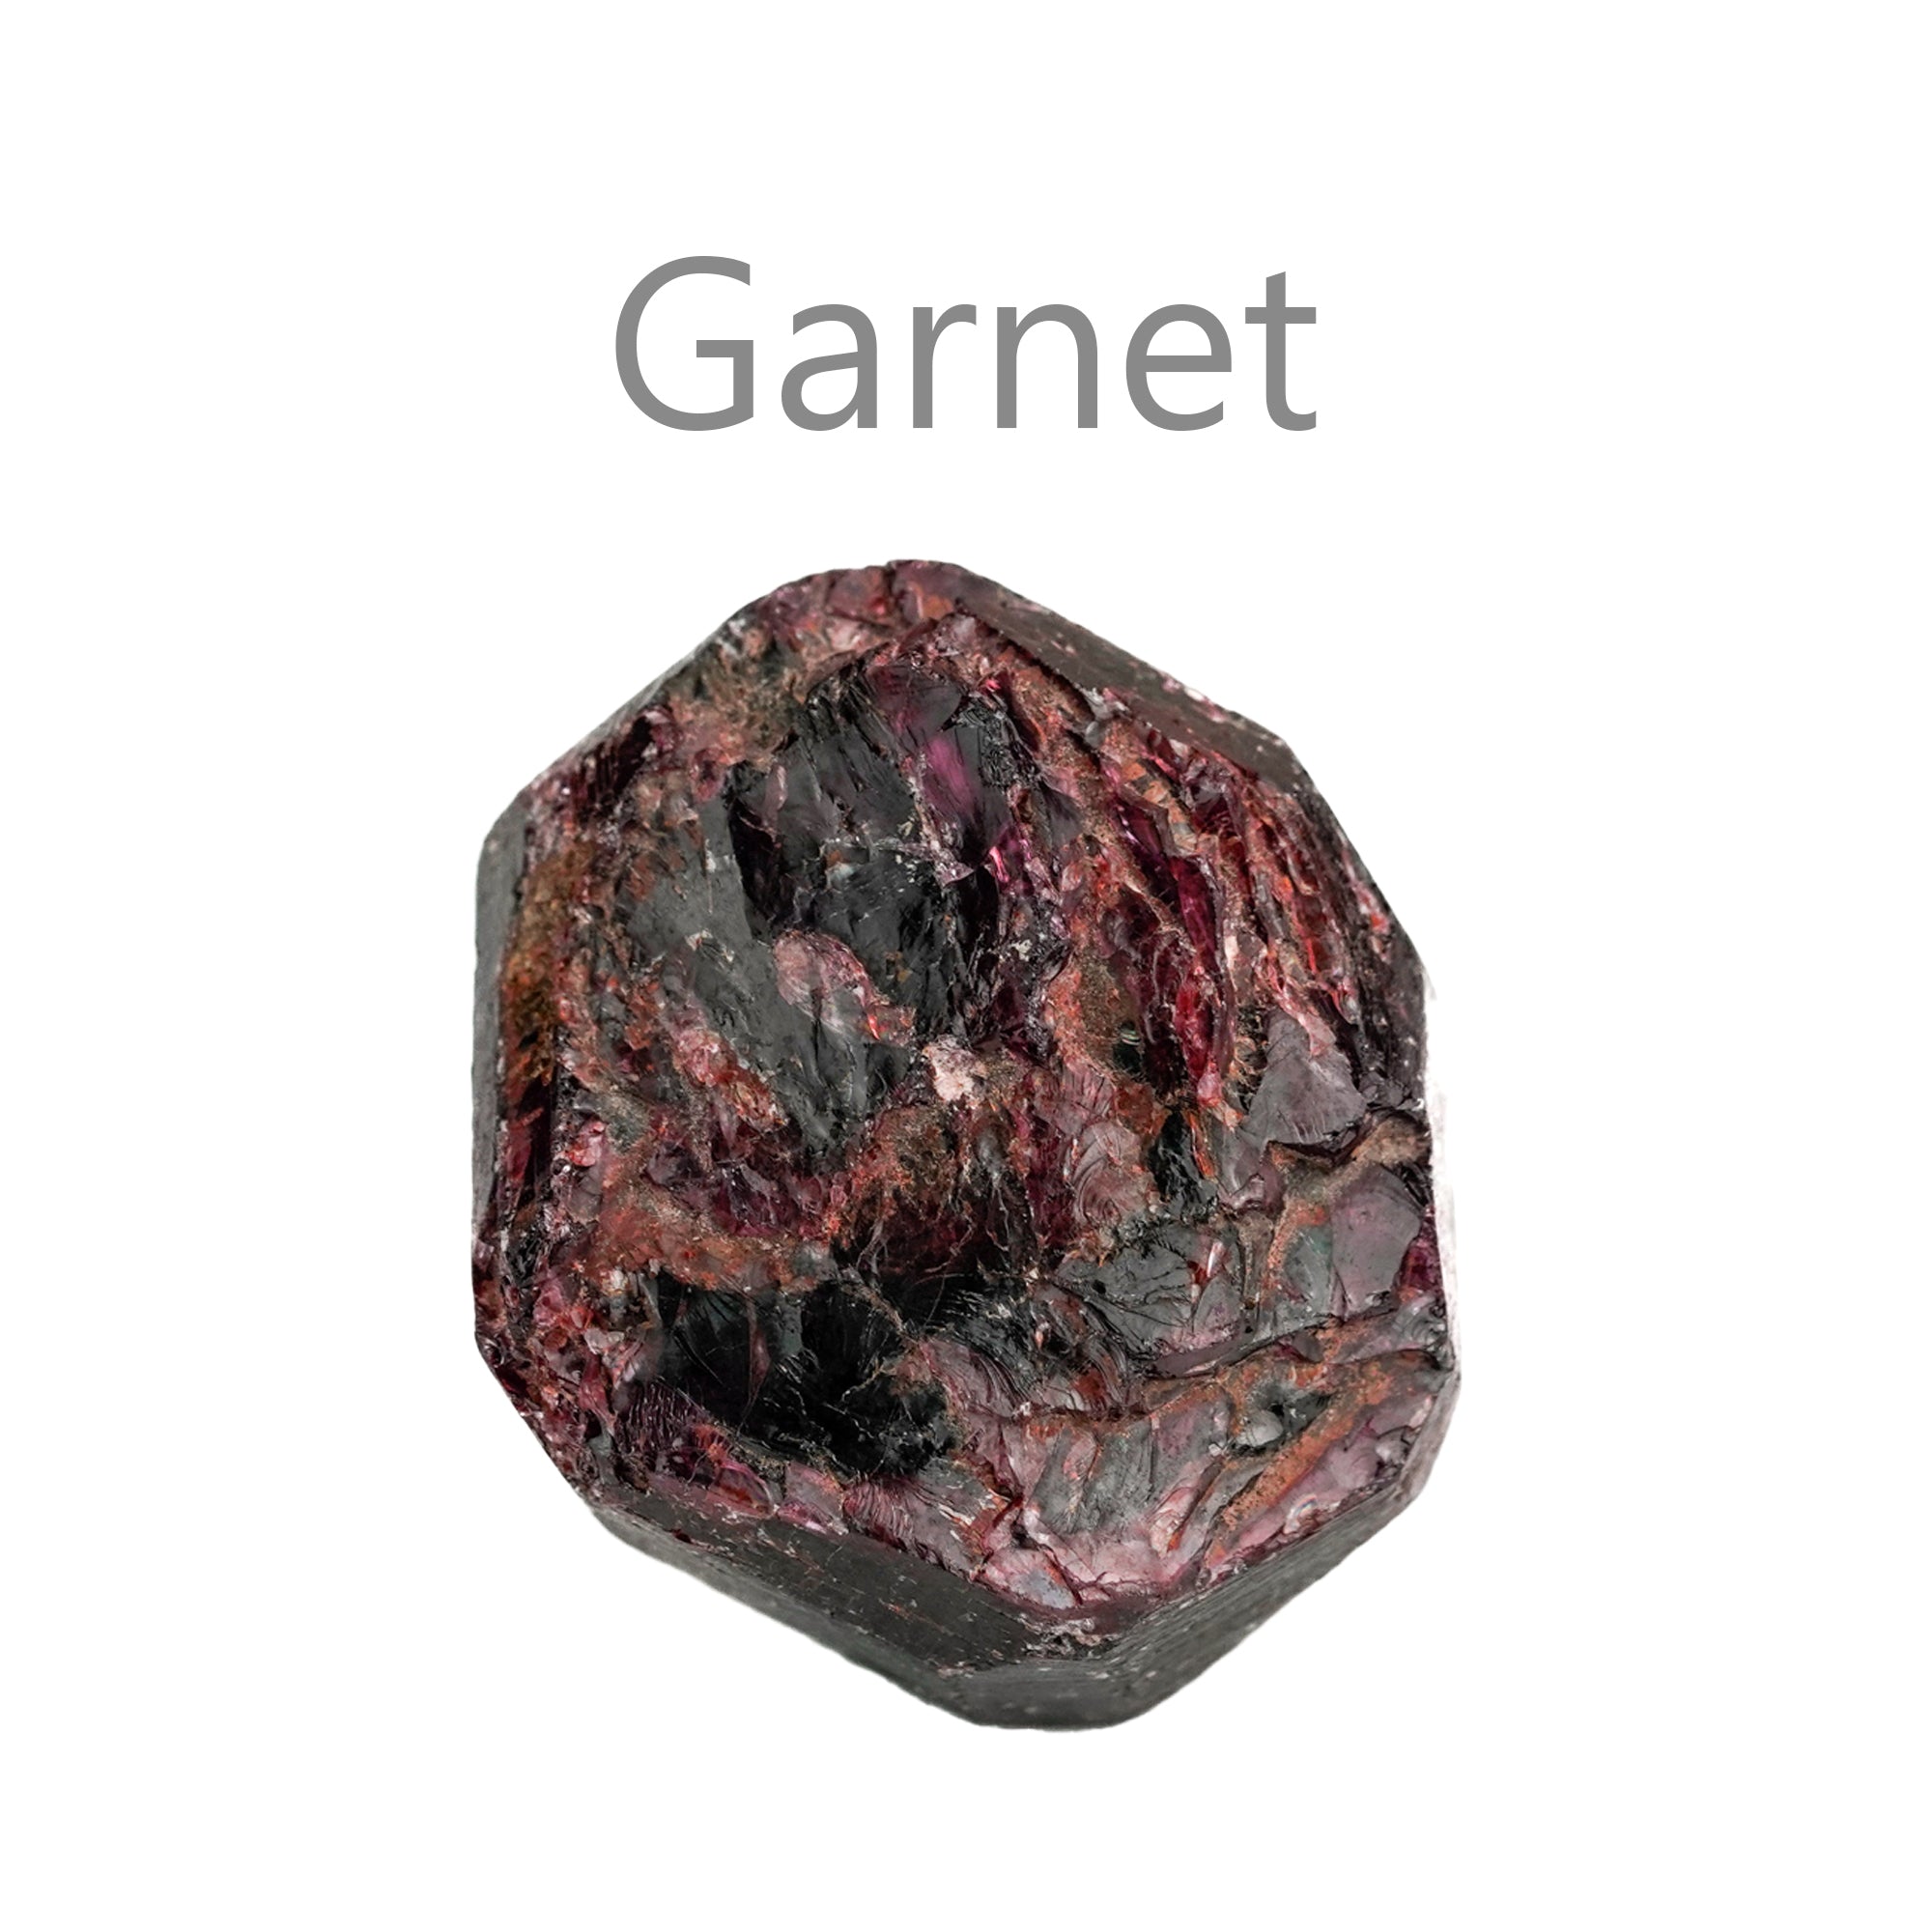 garnet